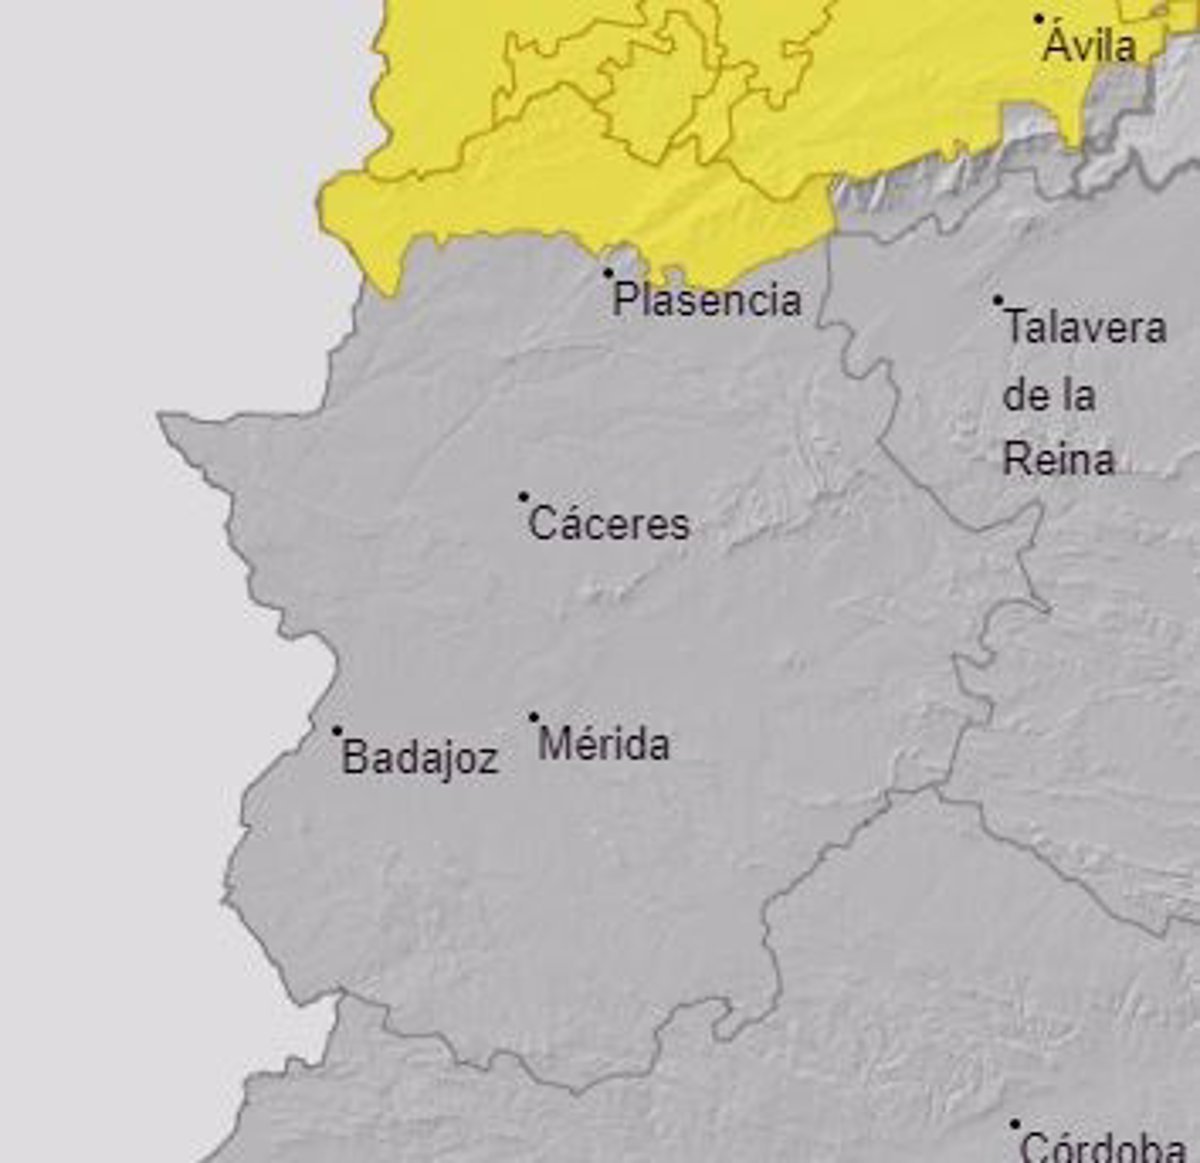 Este sábado, el norte de la provincia de Cáceres activa la alerta amarilla por lluvias y tormentas